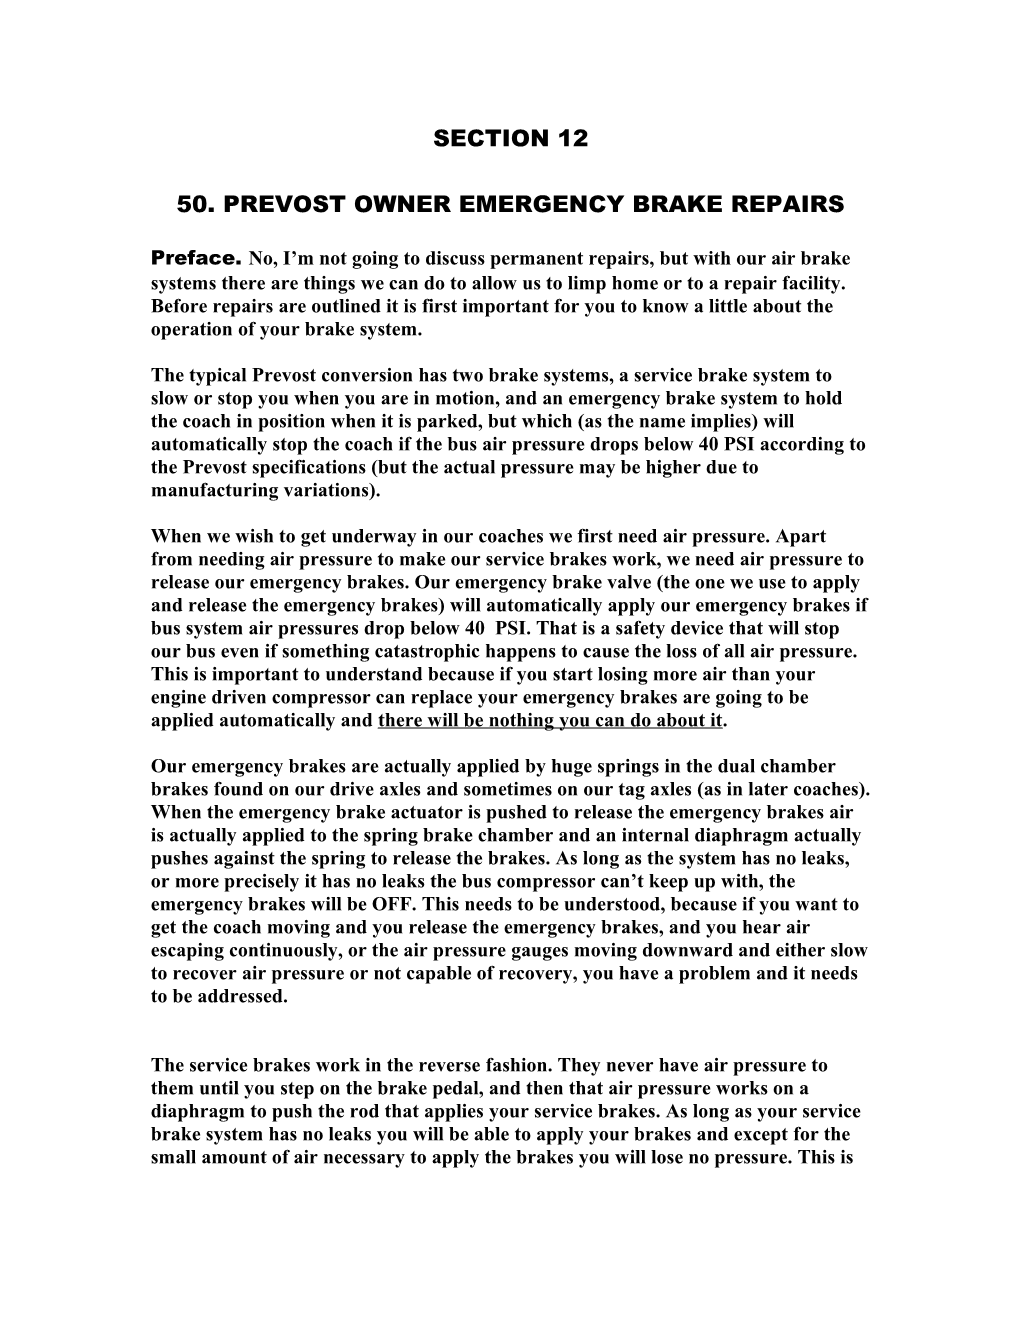 50. Prevost Owner Emergency Brake Repairs